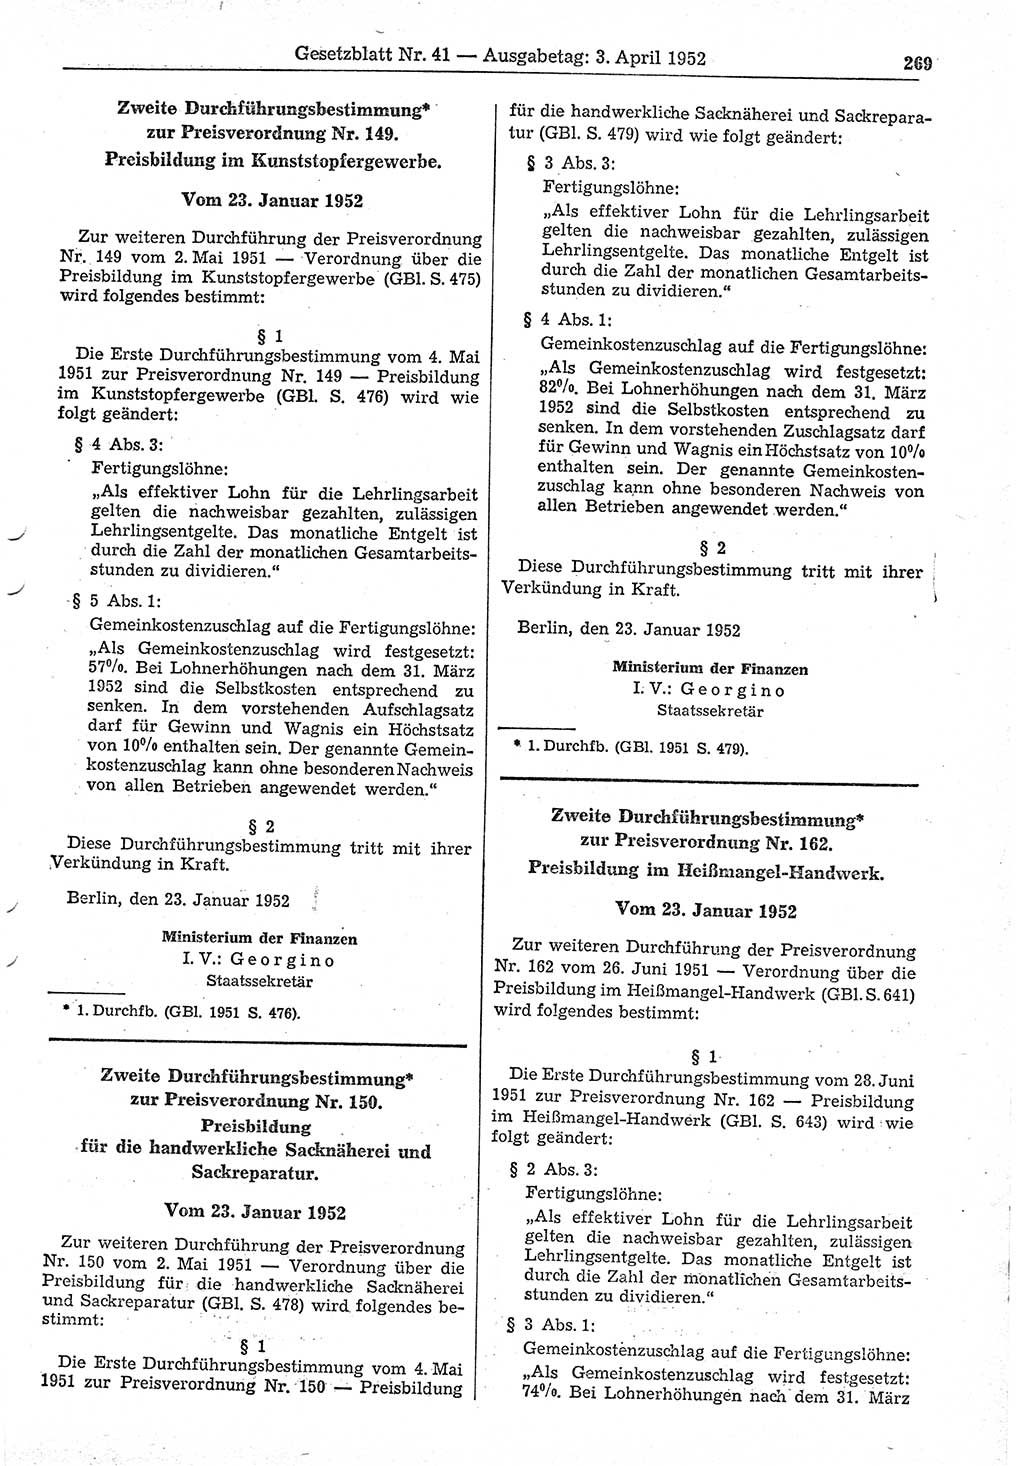 Gesetzblatt (GBl.) der Deutschen Demokratischen Republik (DDR) 1952, Seite 269 (GBl. DDR 1952, S. 269)